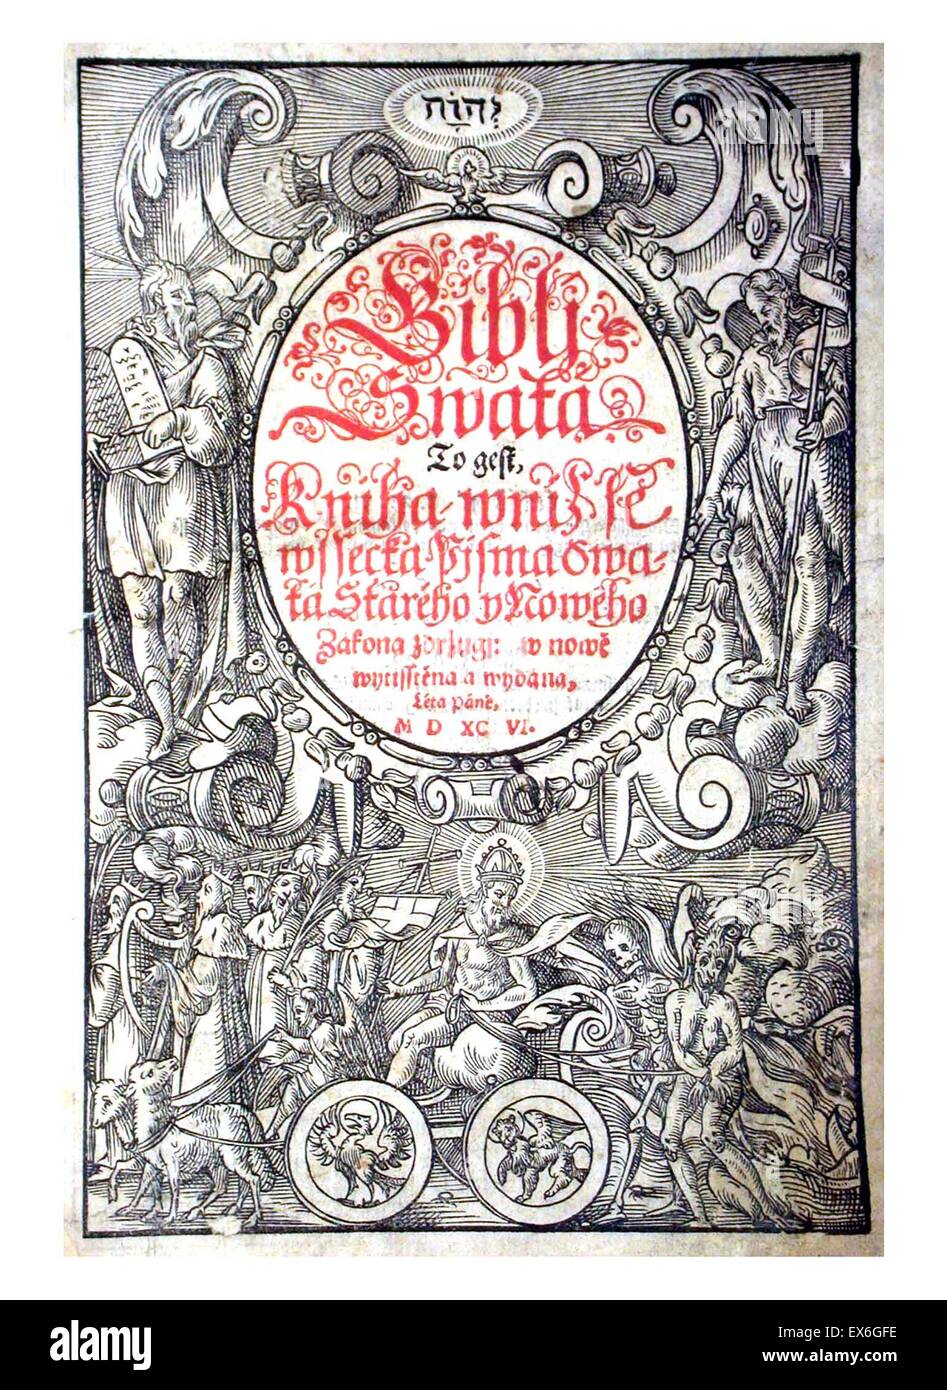 La Bohemia Kralitz Biblia. Publicado por protestantes Unitas Fratrum. Fecha del siglo XVI. Foto de stock